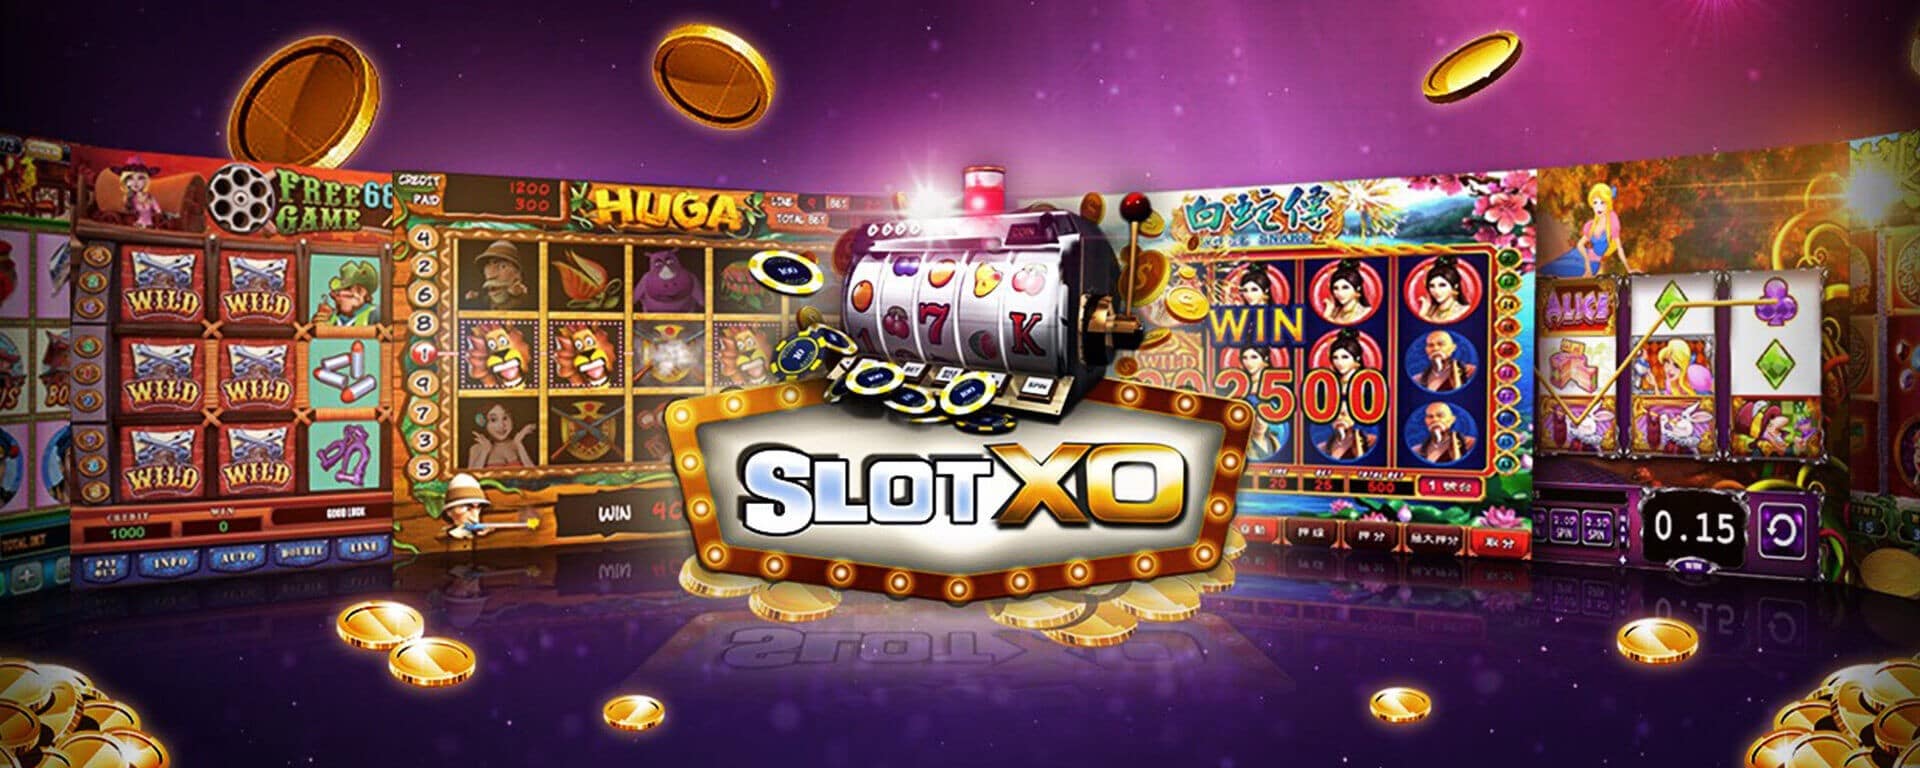 slotxo ค่ายพนันออนไลน์สุดเจ๋งที่ใครเล่นก็รวยทุกคน